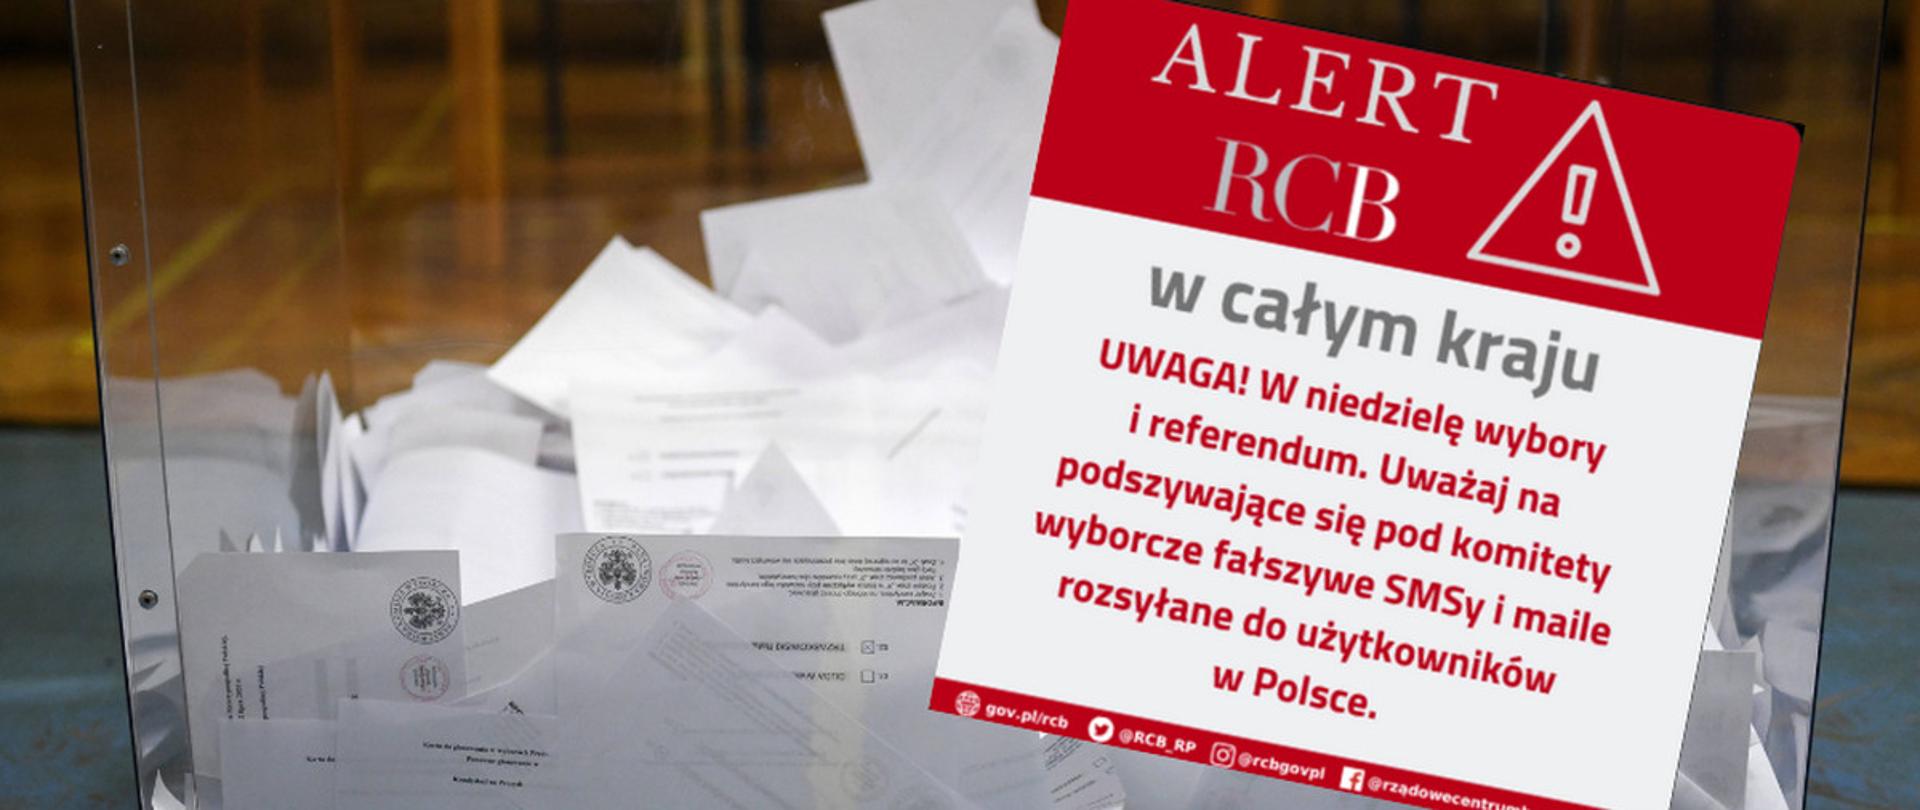 Zdjęcie alertu rządowego centrum bezpieczeństwa o treści: UWAGA! W niedzielę wybory i referendum. Uważaj na podszywające się pod komitety wyborcze fałszywe SMSy i maile rozsyłane do użytkowników w Polsce.